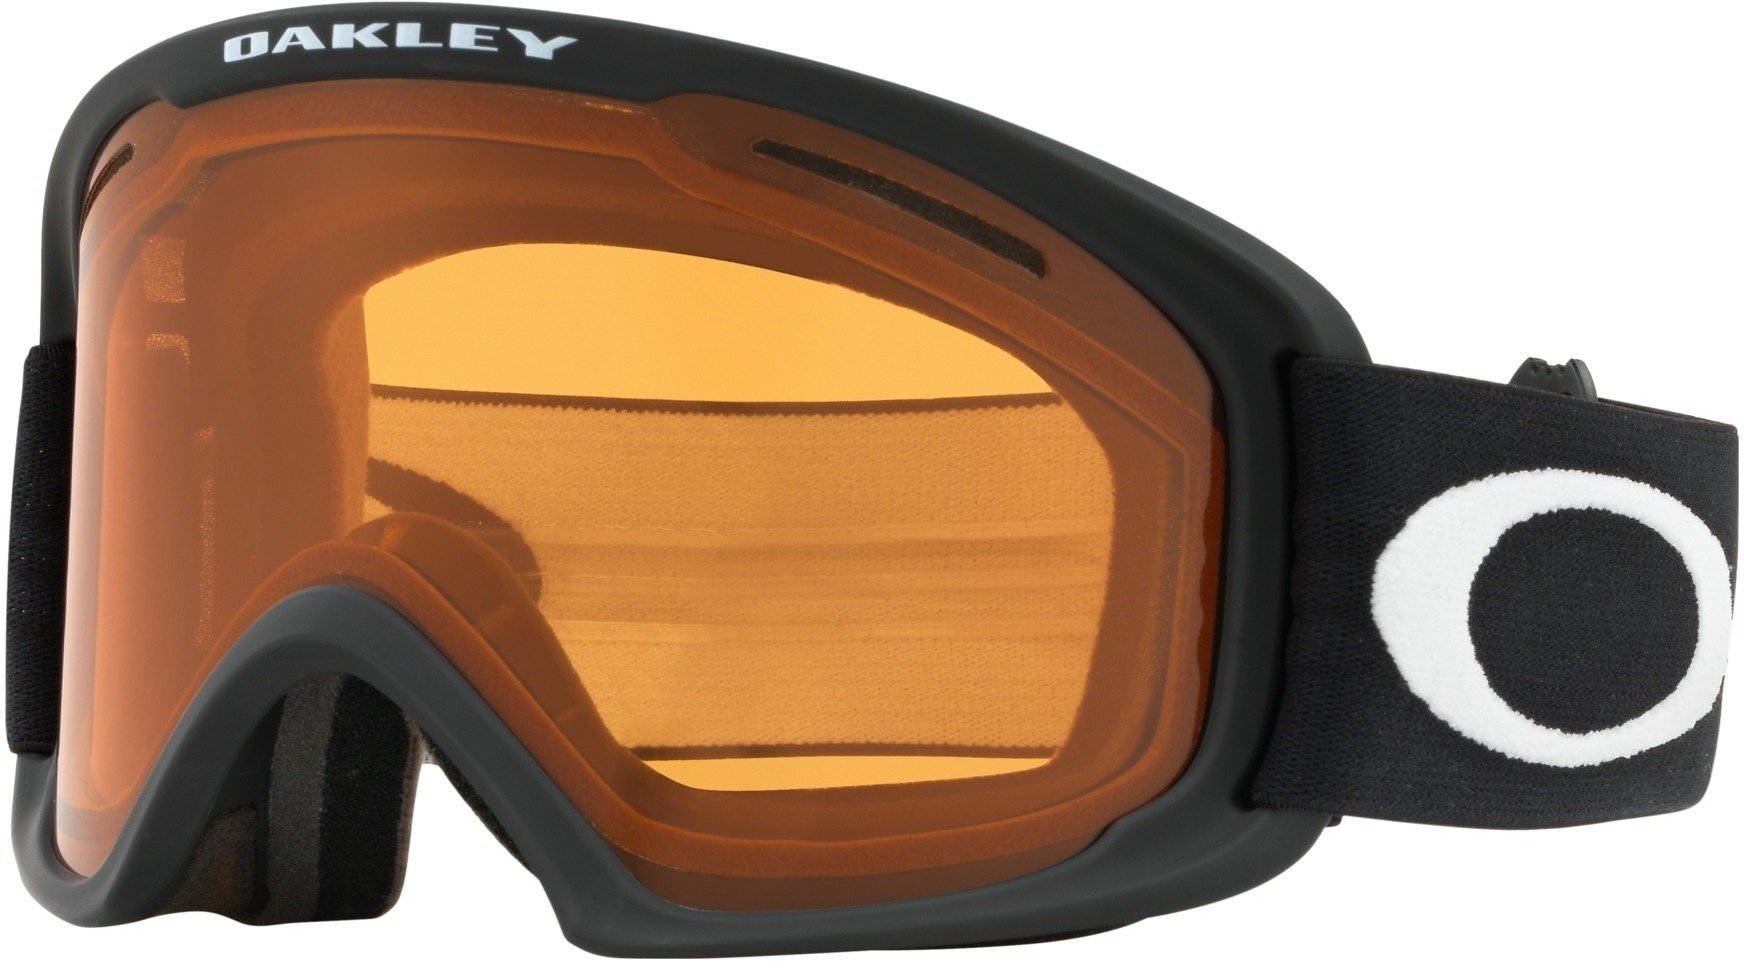 Ski Goggles Oakley O Frame 2.0 XL Ski Goggles